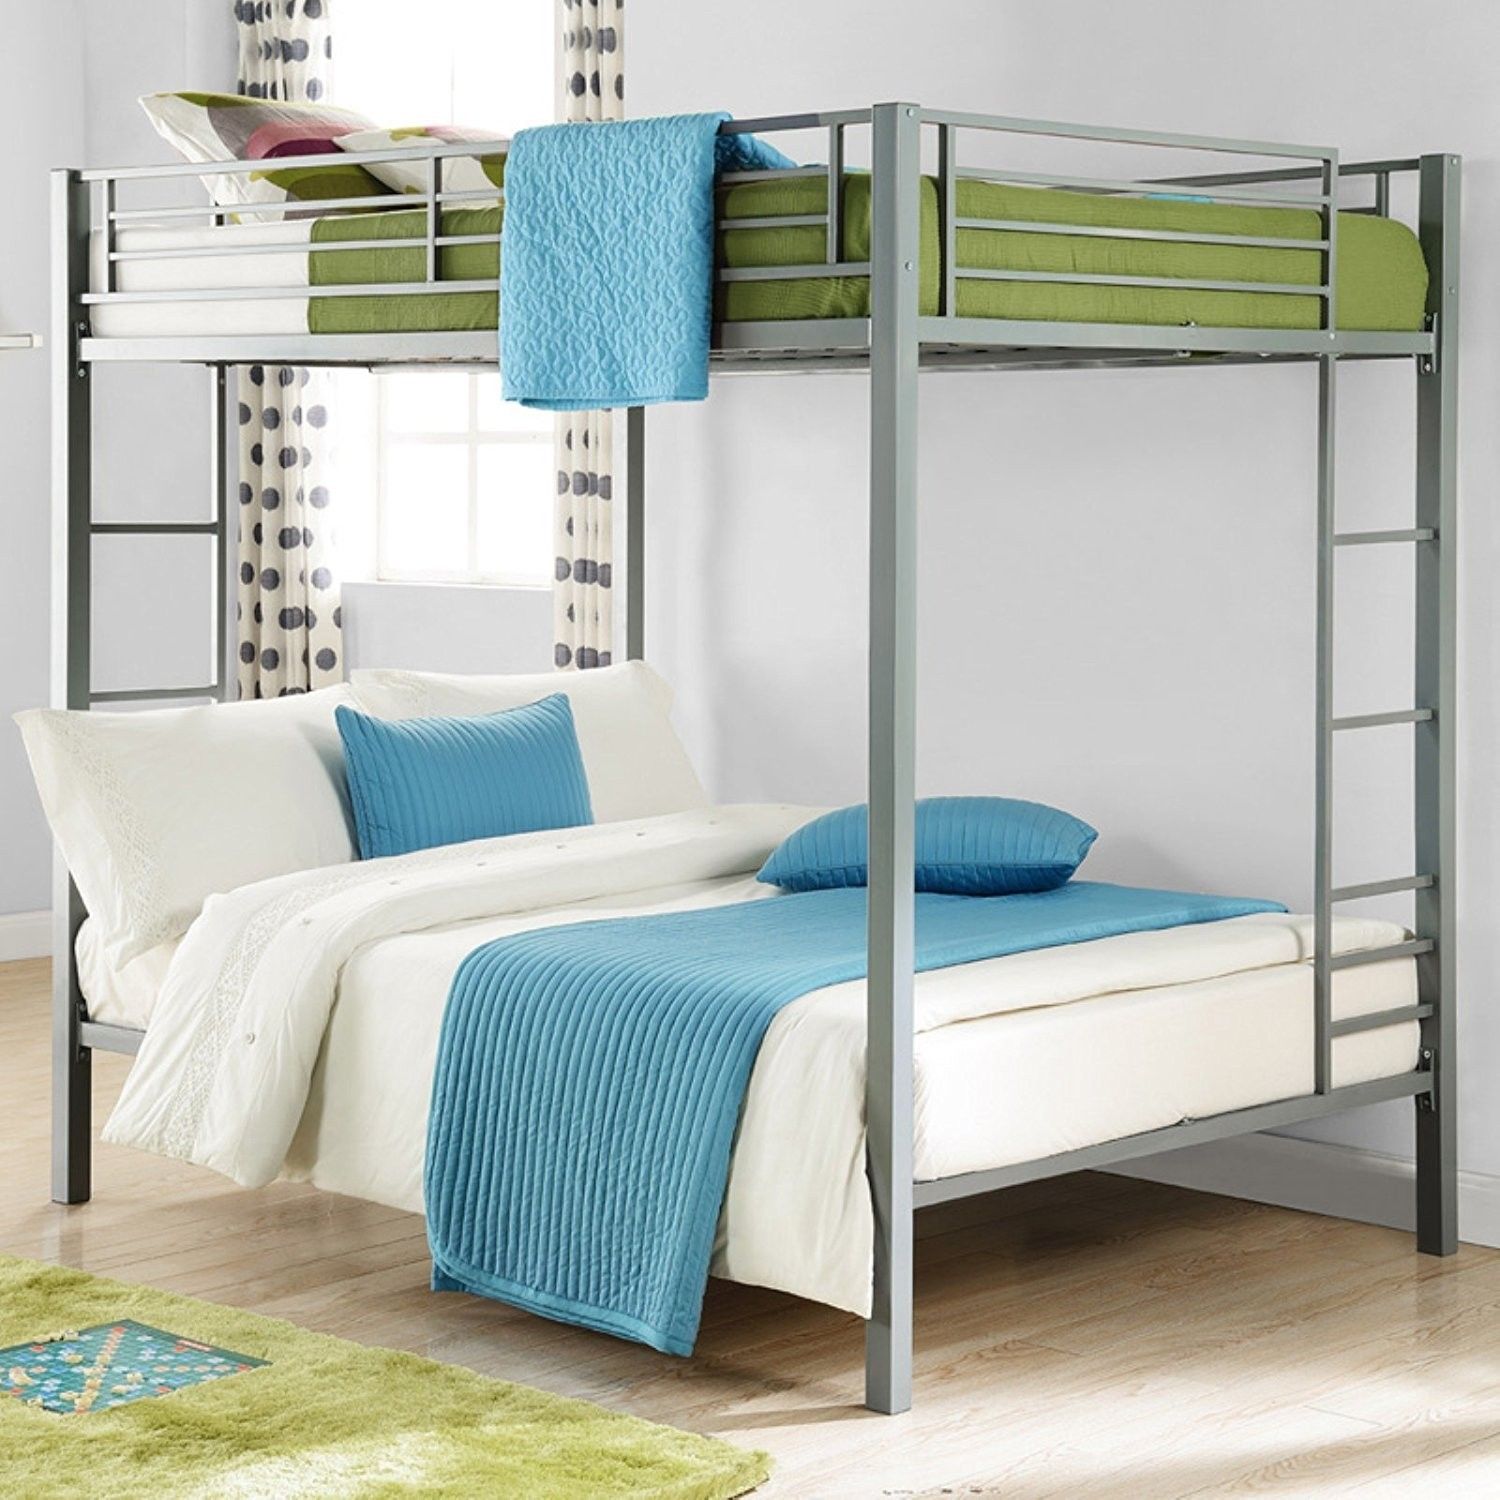 Двухъярусные кровати в интерьере — как выбрать? Интересный обзор с 50 фото дизайна.